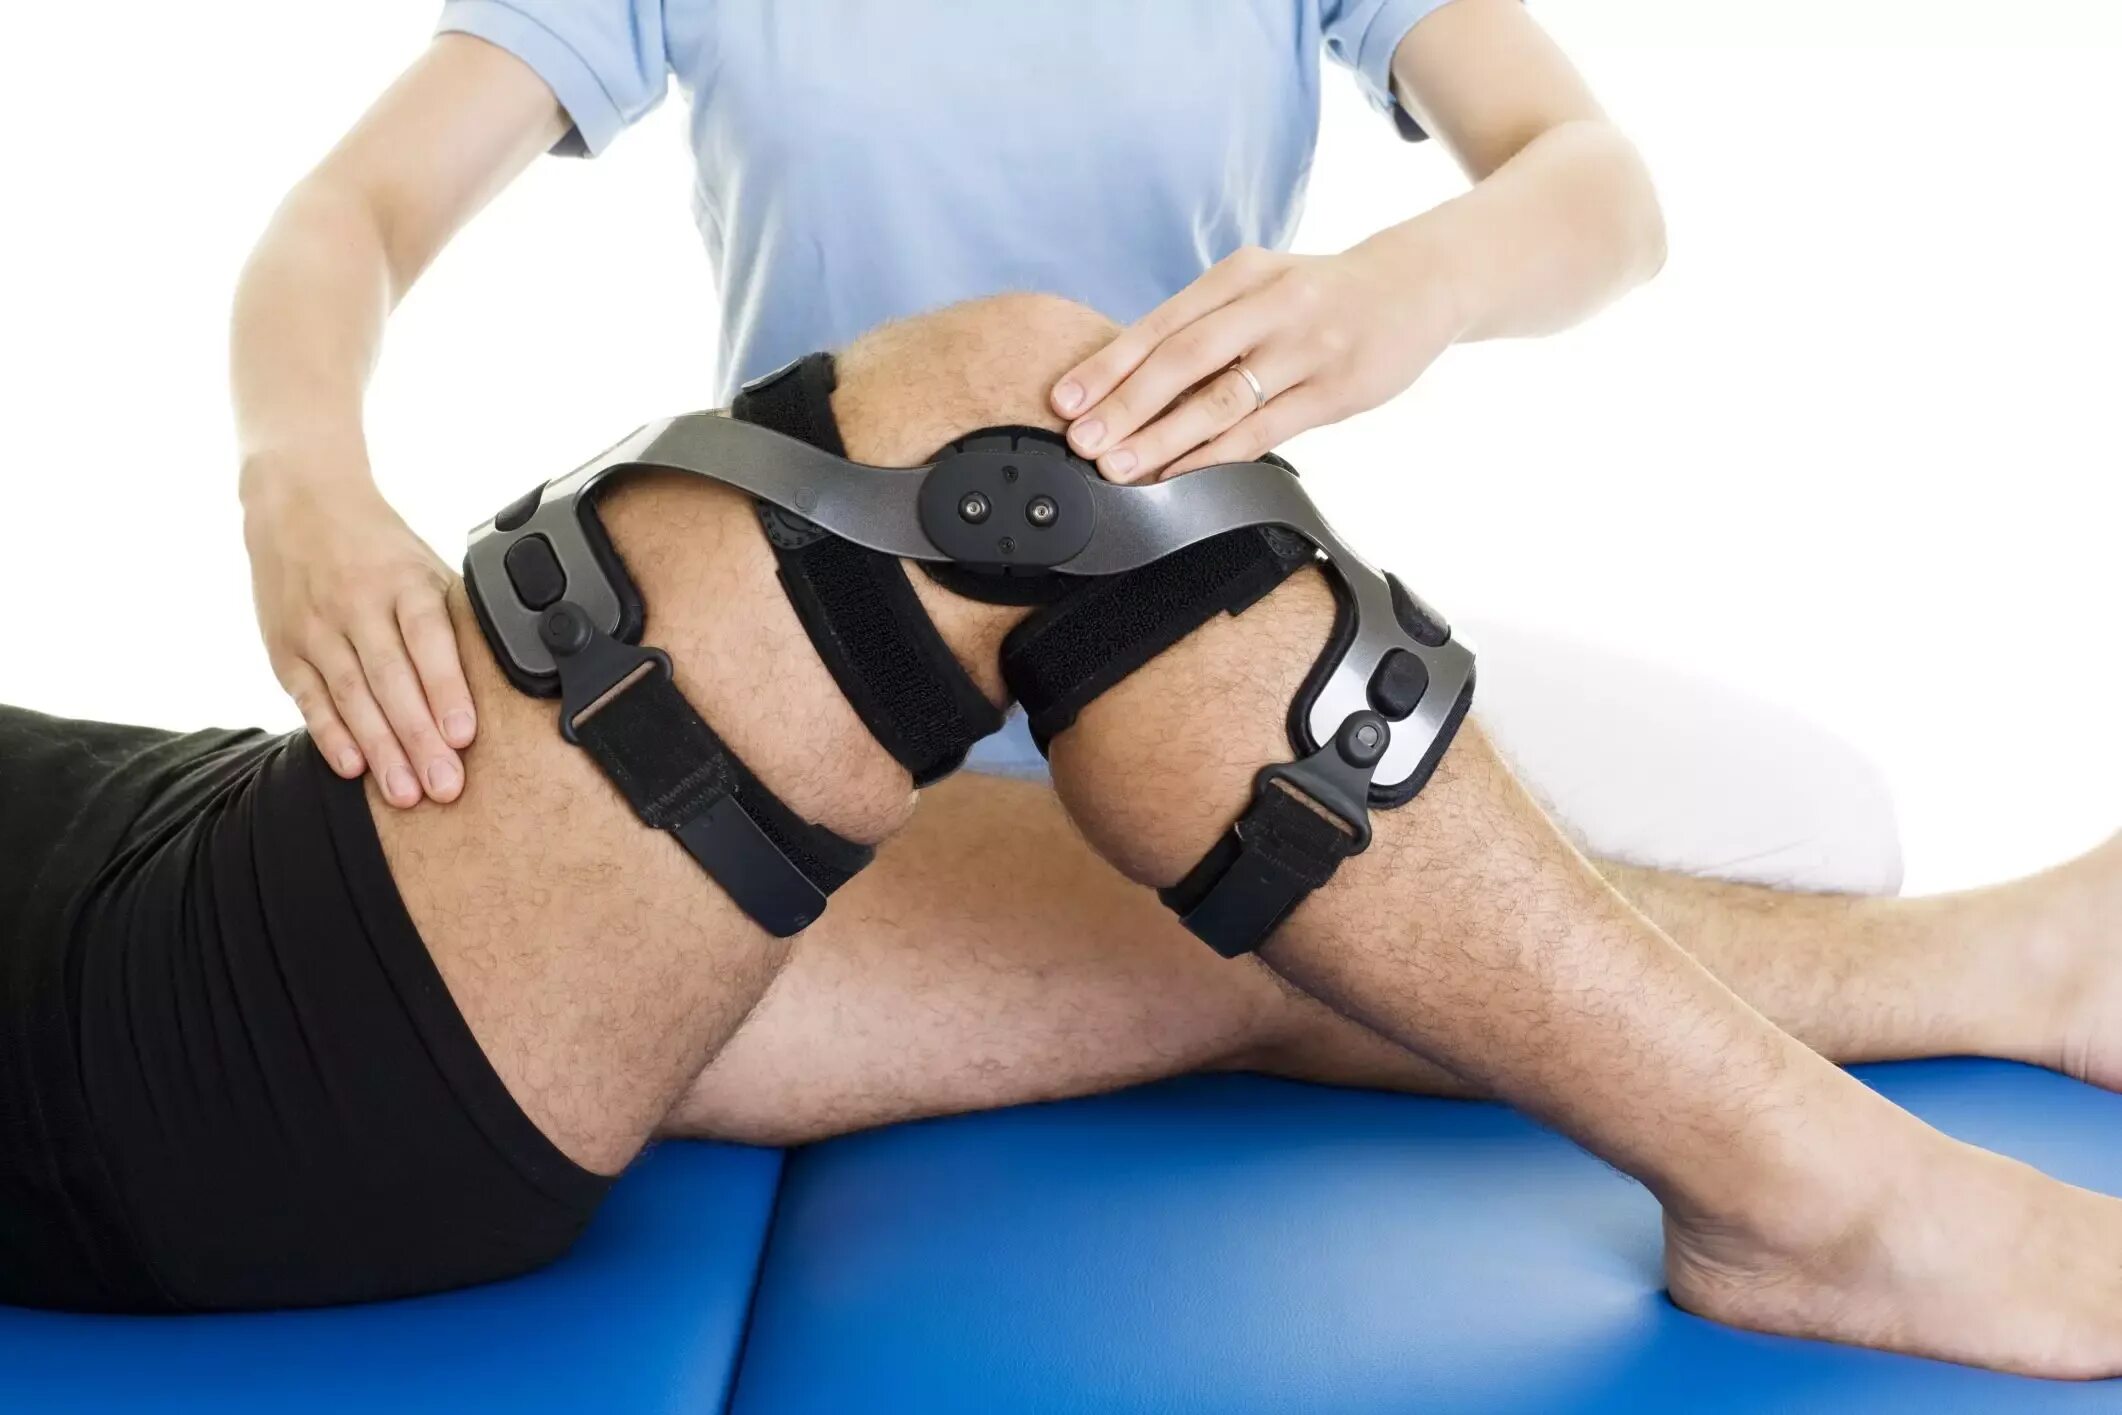 Операция тазобедренная замена сколько длится. Реабилитация коленного сустава. Реабилитация после эндопротезирования коленного сустава. Реабилитацияпослеперайц иинаколенномсуставе. Эндопротезирование коленного сустава реабилитация.